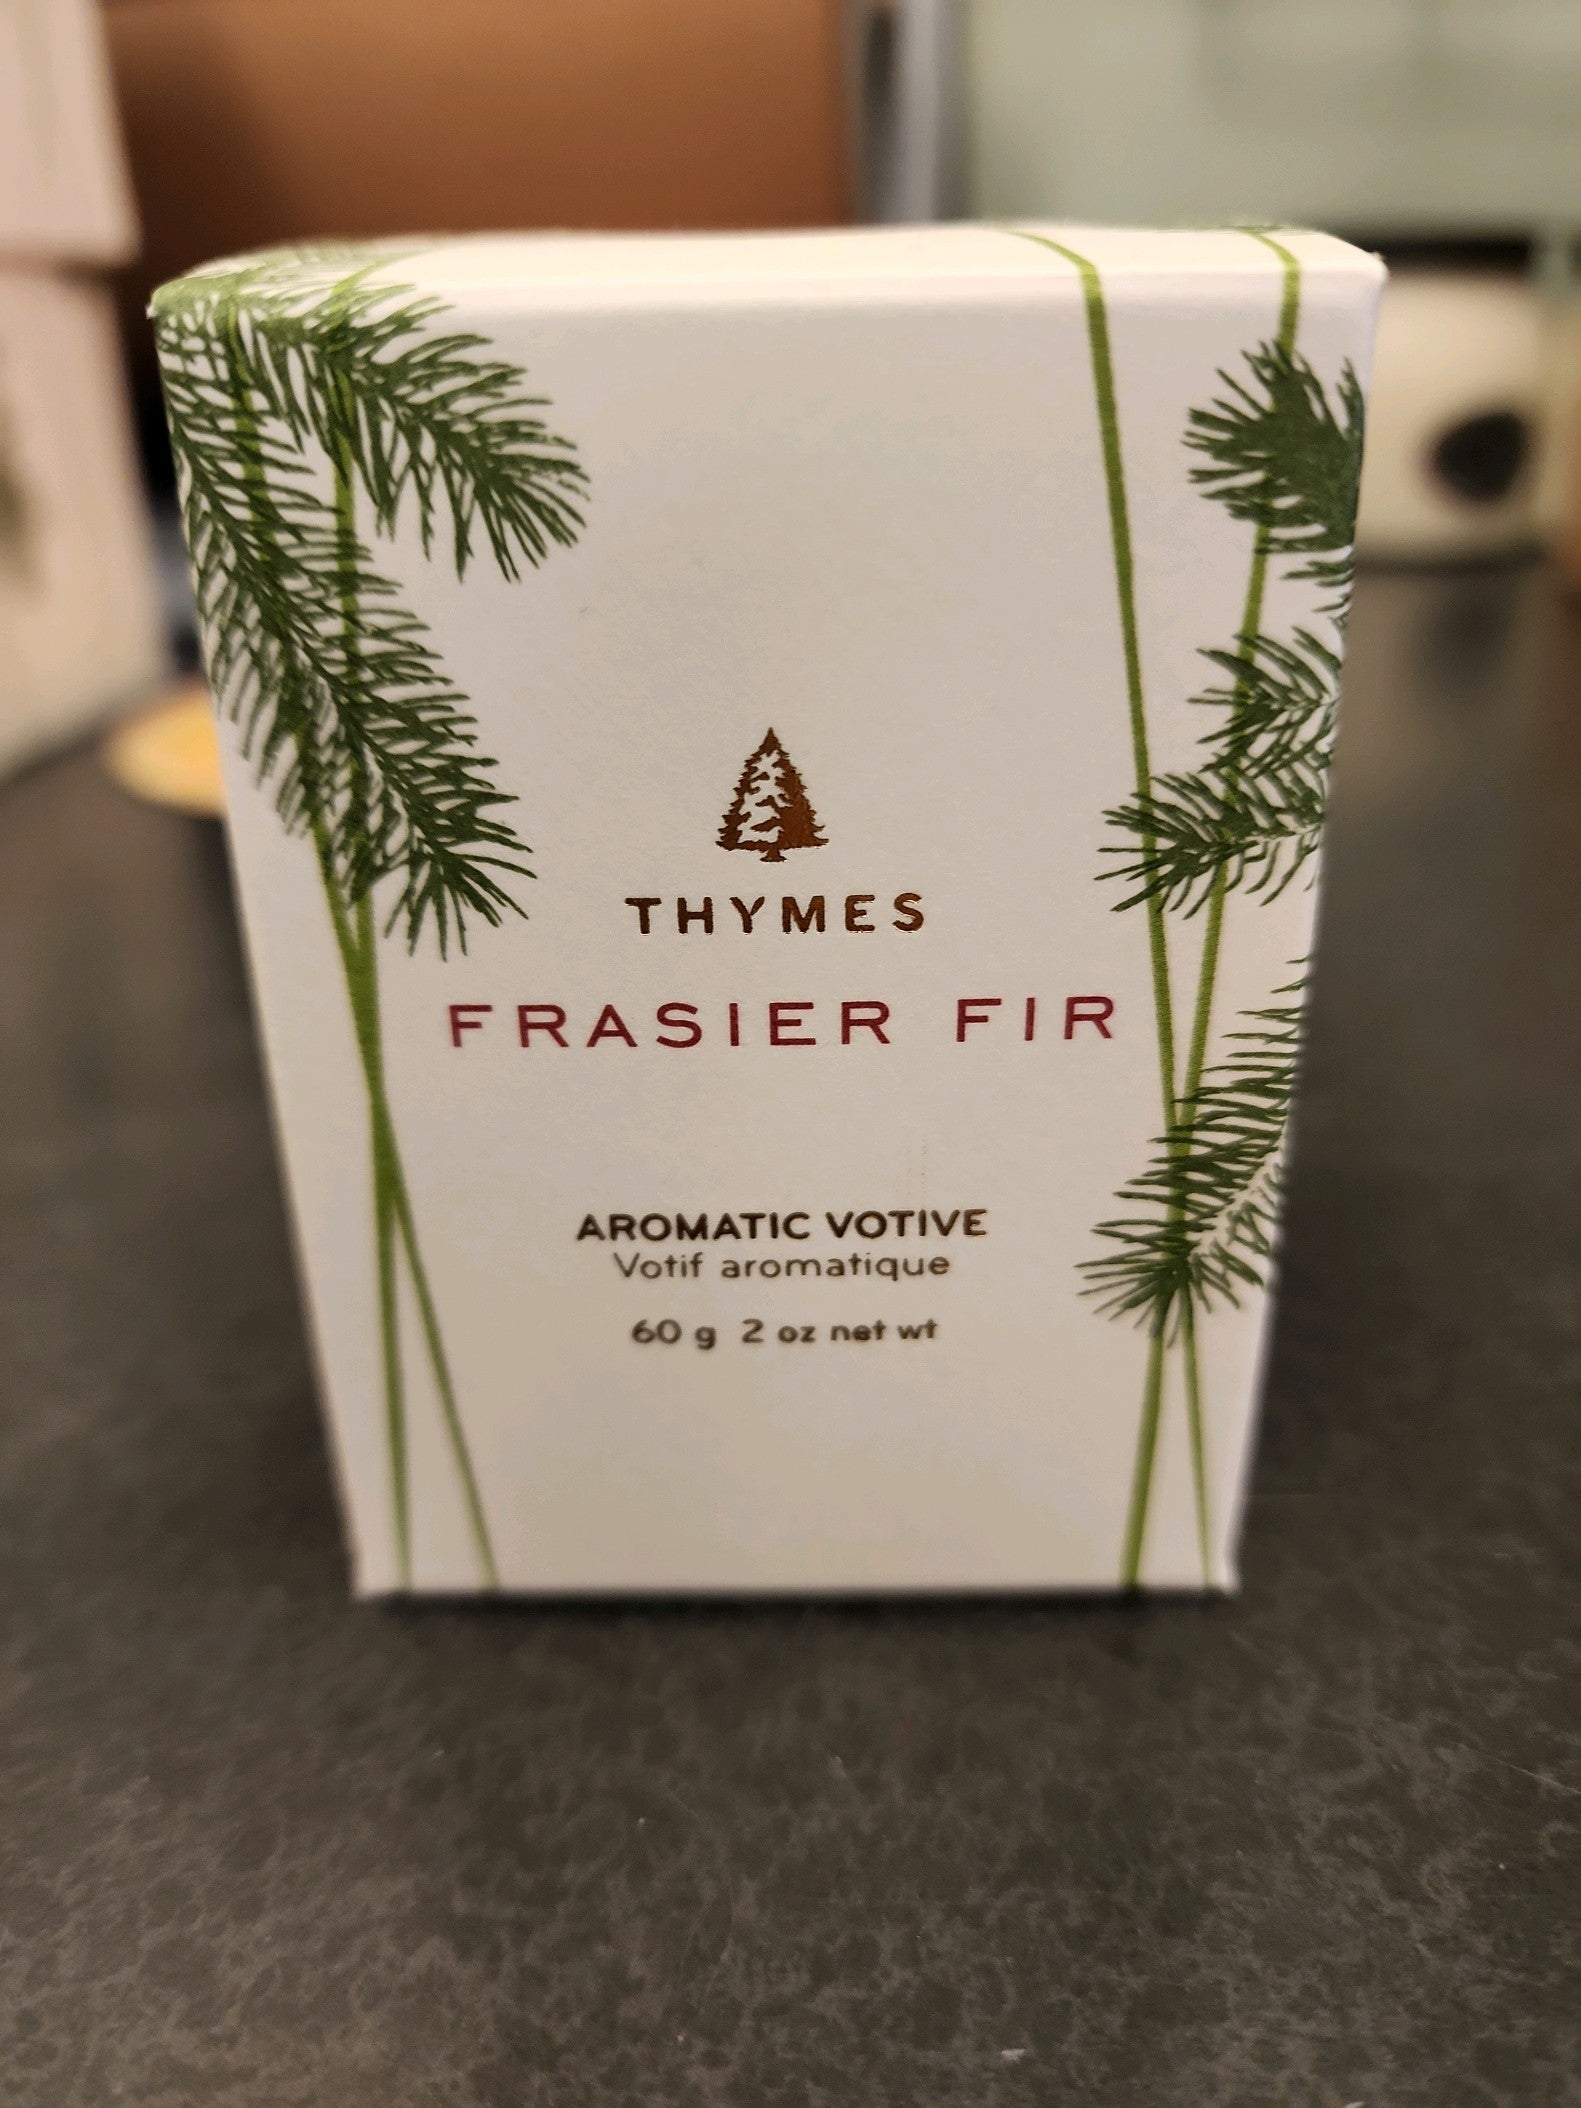 Thymes Frasier Fir Pine Aromatic Votive